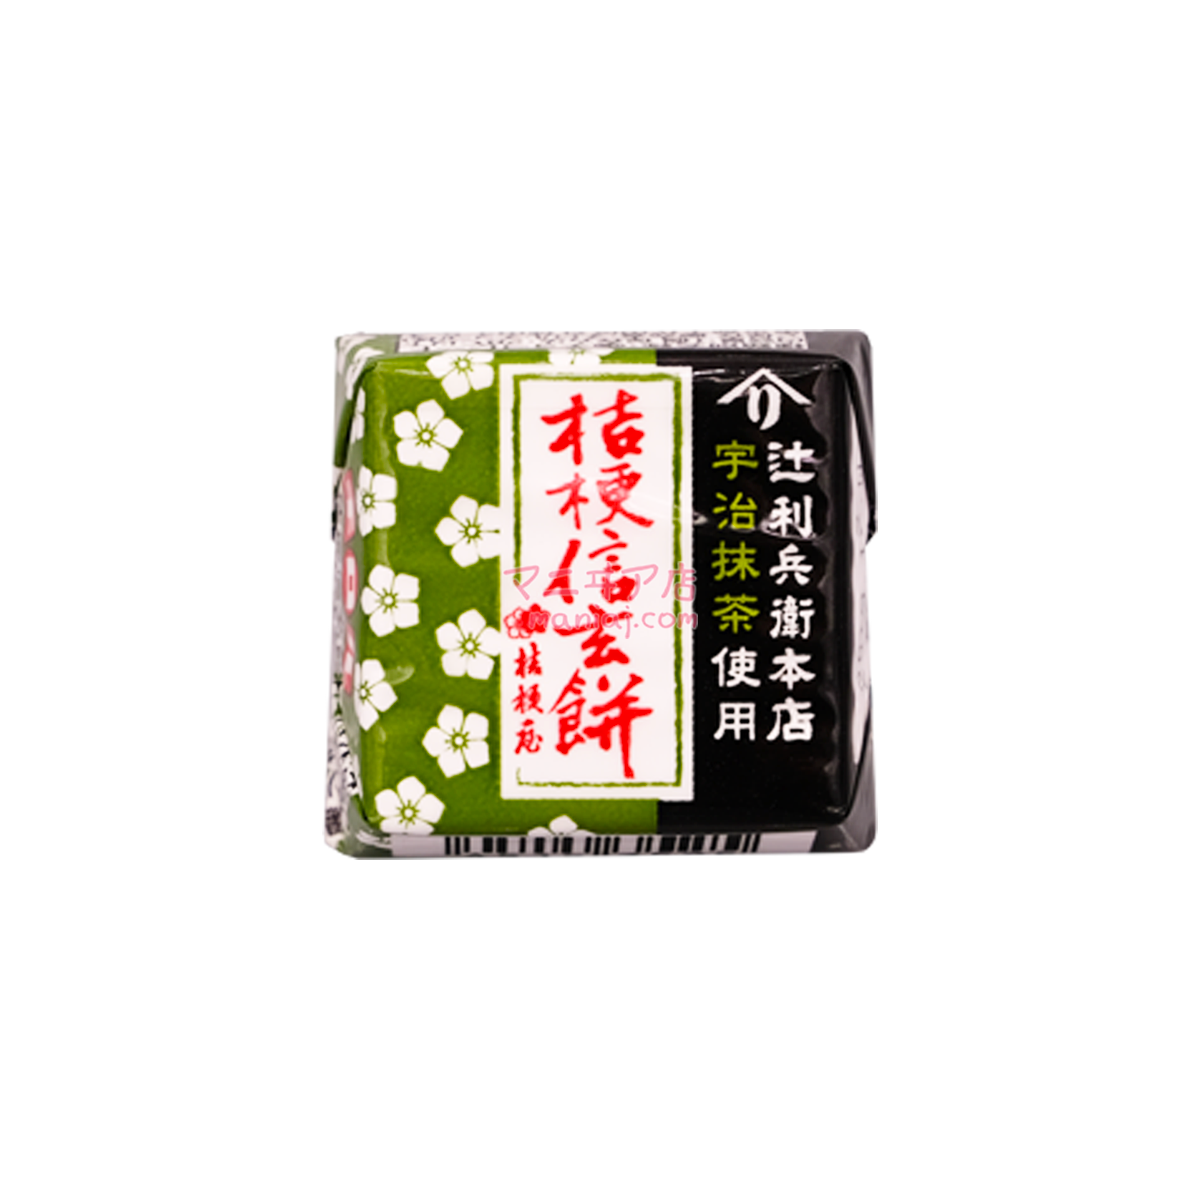 Kikyo Shingen Cake Uji Matcha Chocolate